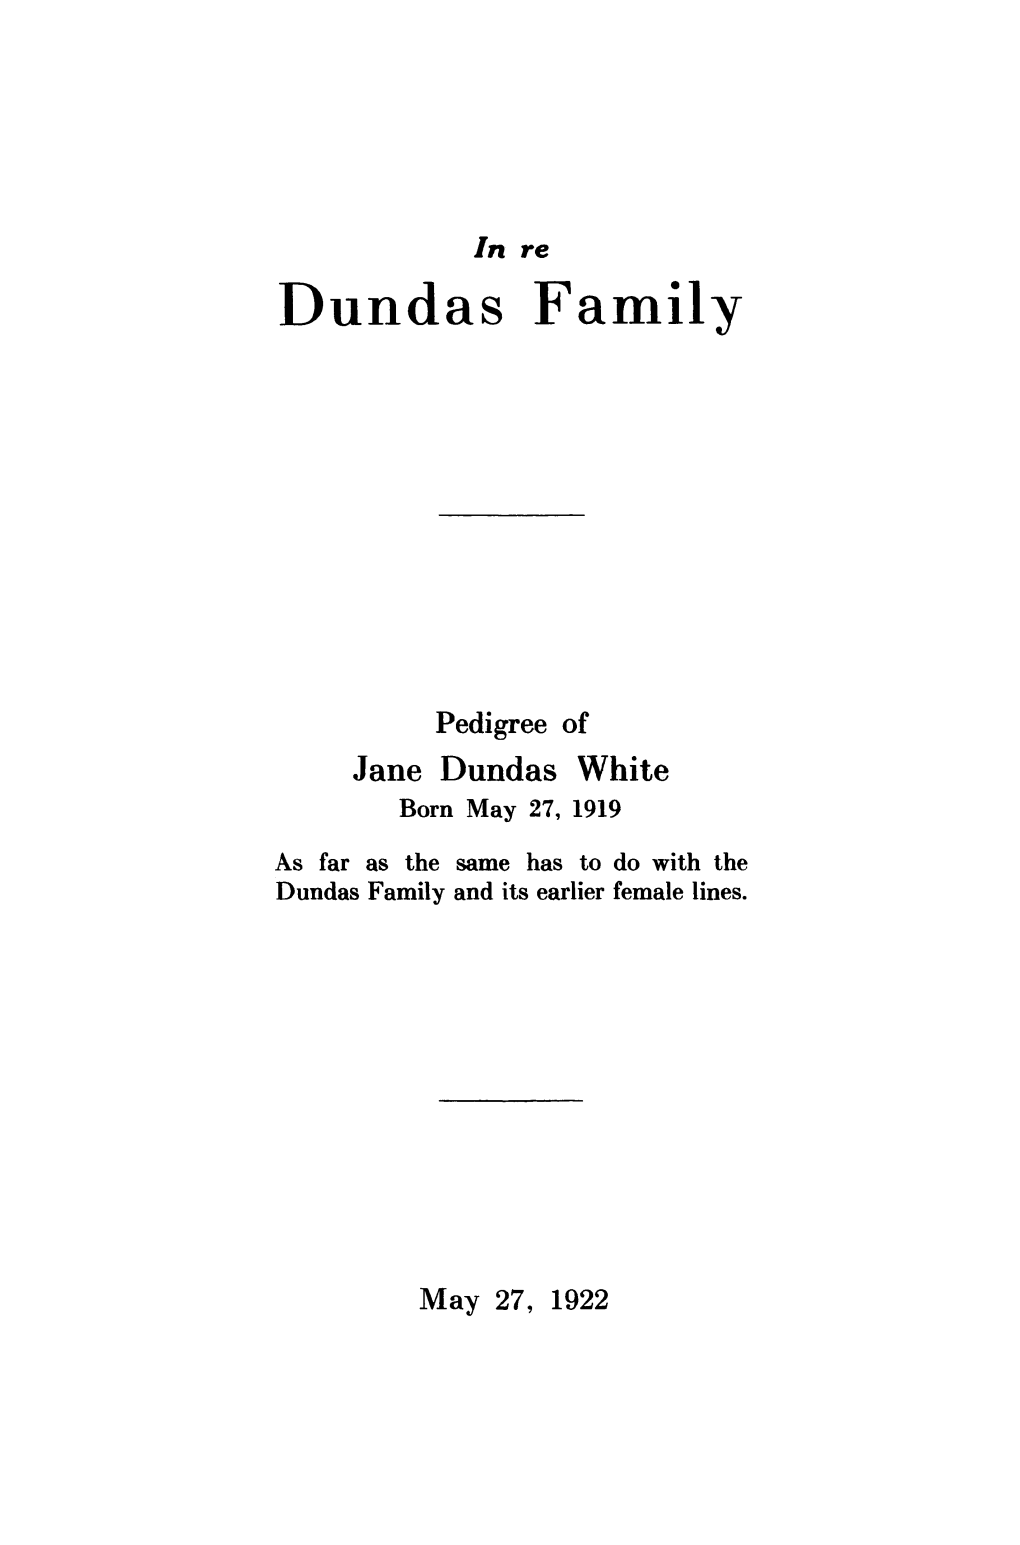 Dundas Family